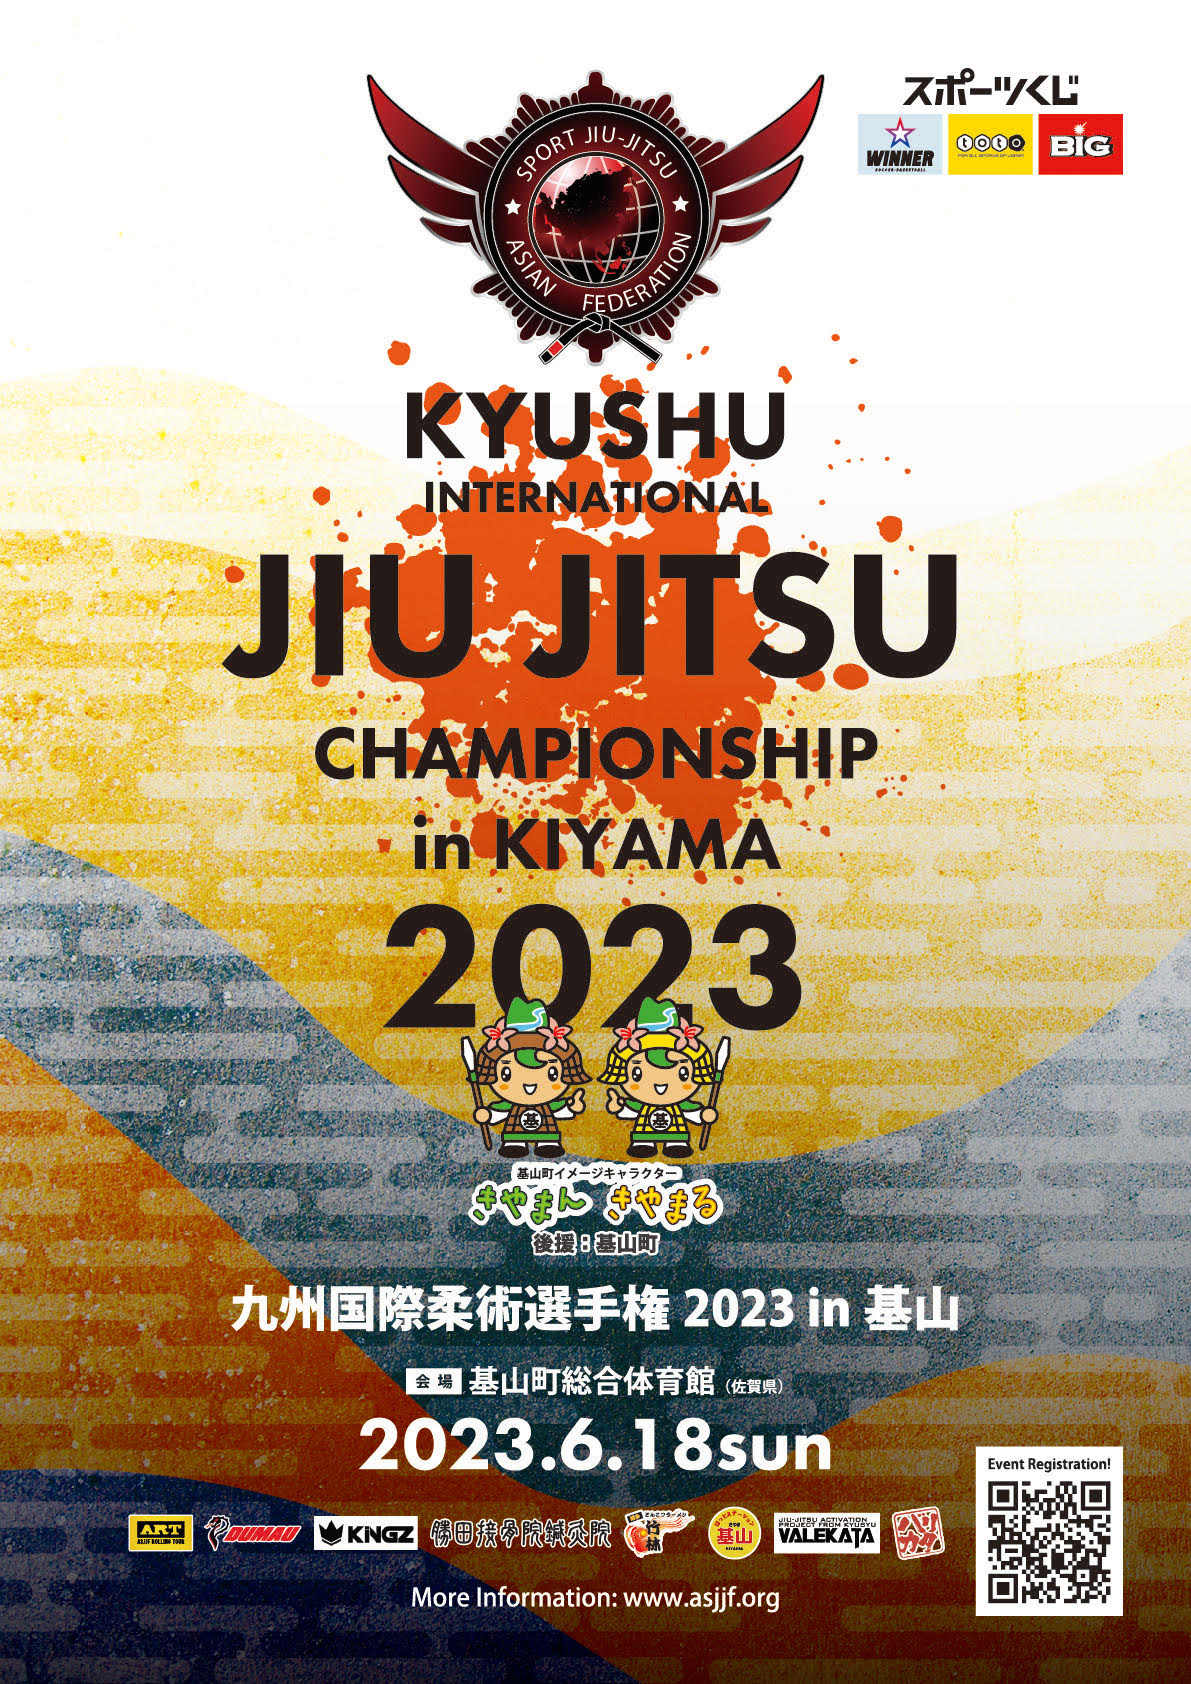 kyushu international jiu jitsu championship 2023